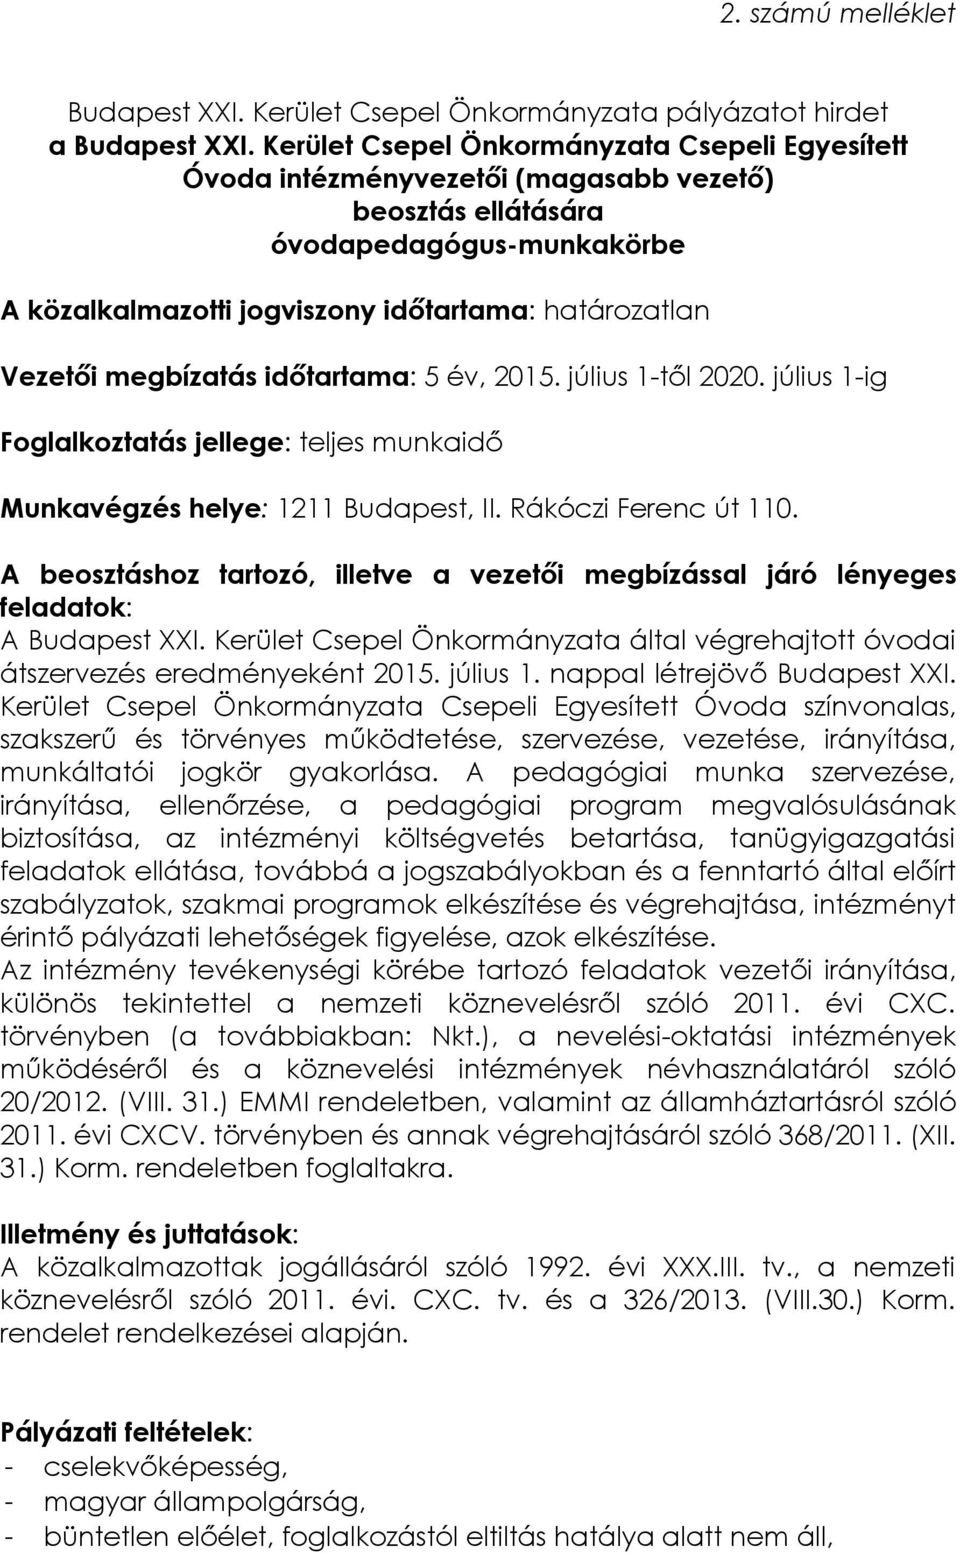 megbízatás időtartama: 5 év, 2015. július 1-től 2020. július 1-ig Foglalkoztatás jellege: teljes munkaidő Munkavégzés helye: 1211 Budapest, II. Rákóczi Ferenc út 110.